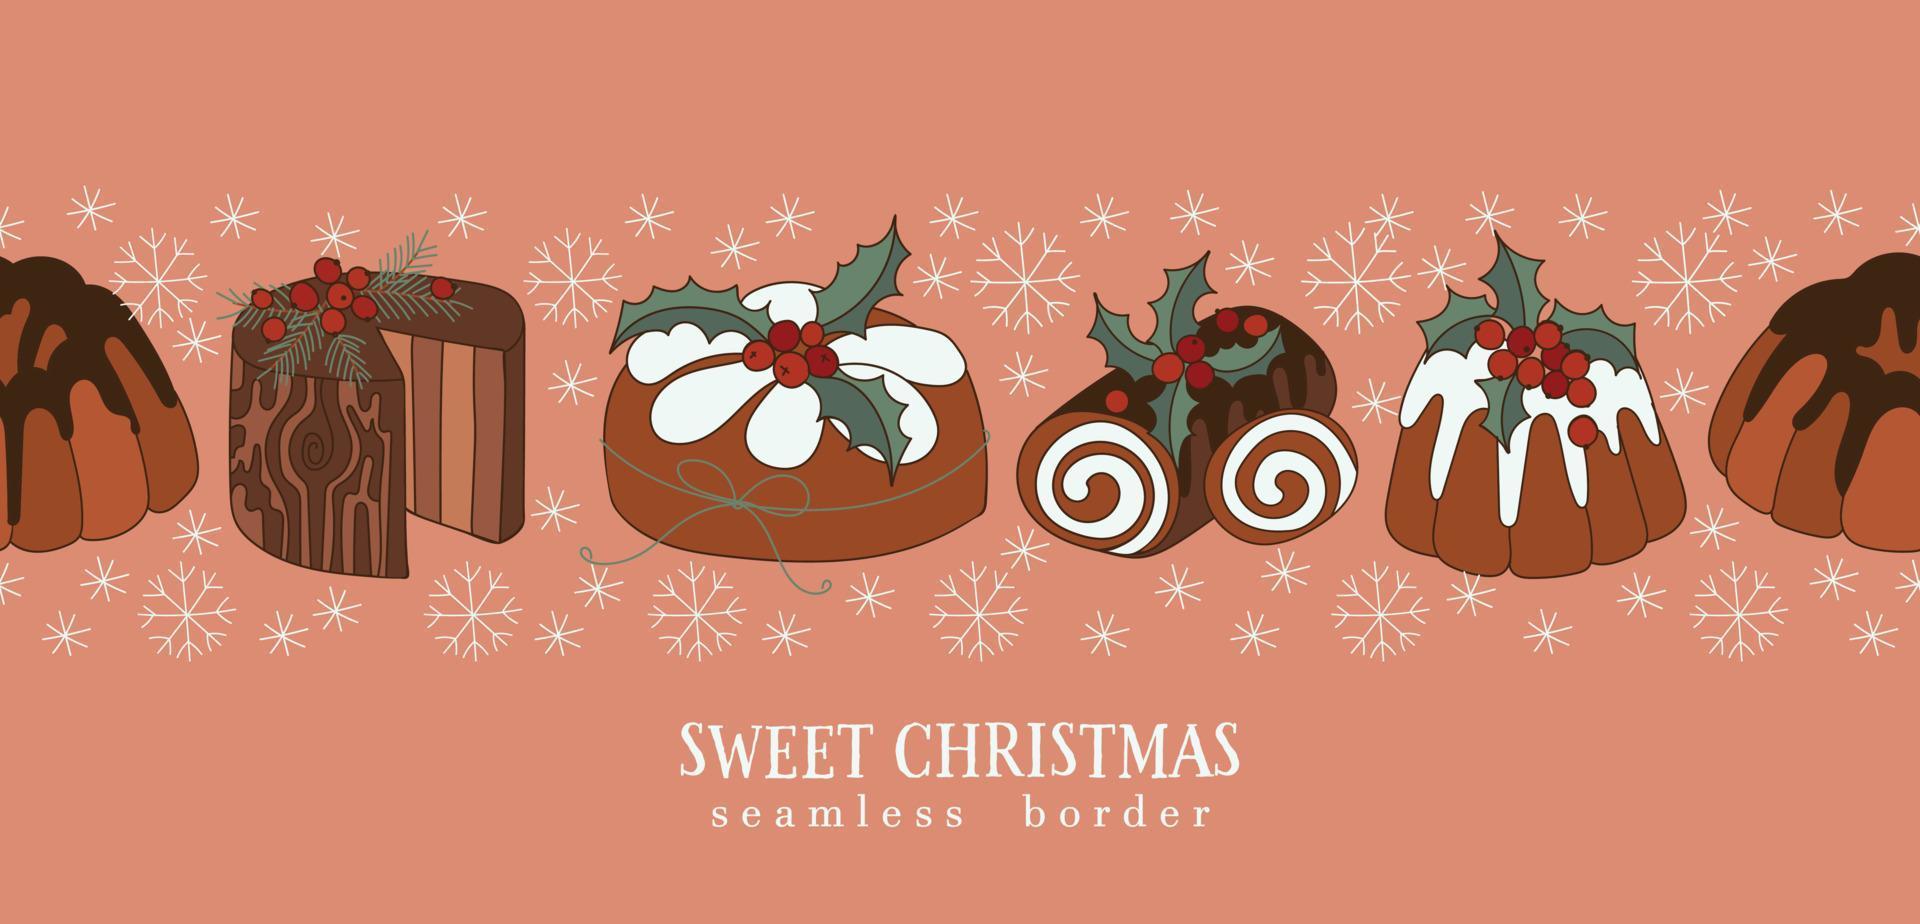 nieuw jaren zoet cupcakes naadloos grens vector illustratie. modieus retro stijl Kerstmis achtergrond.